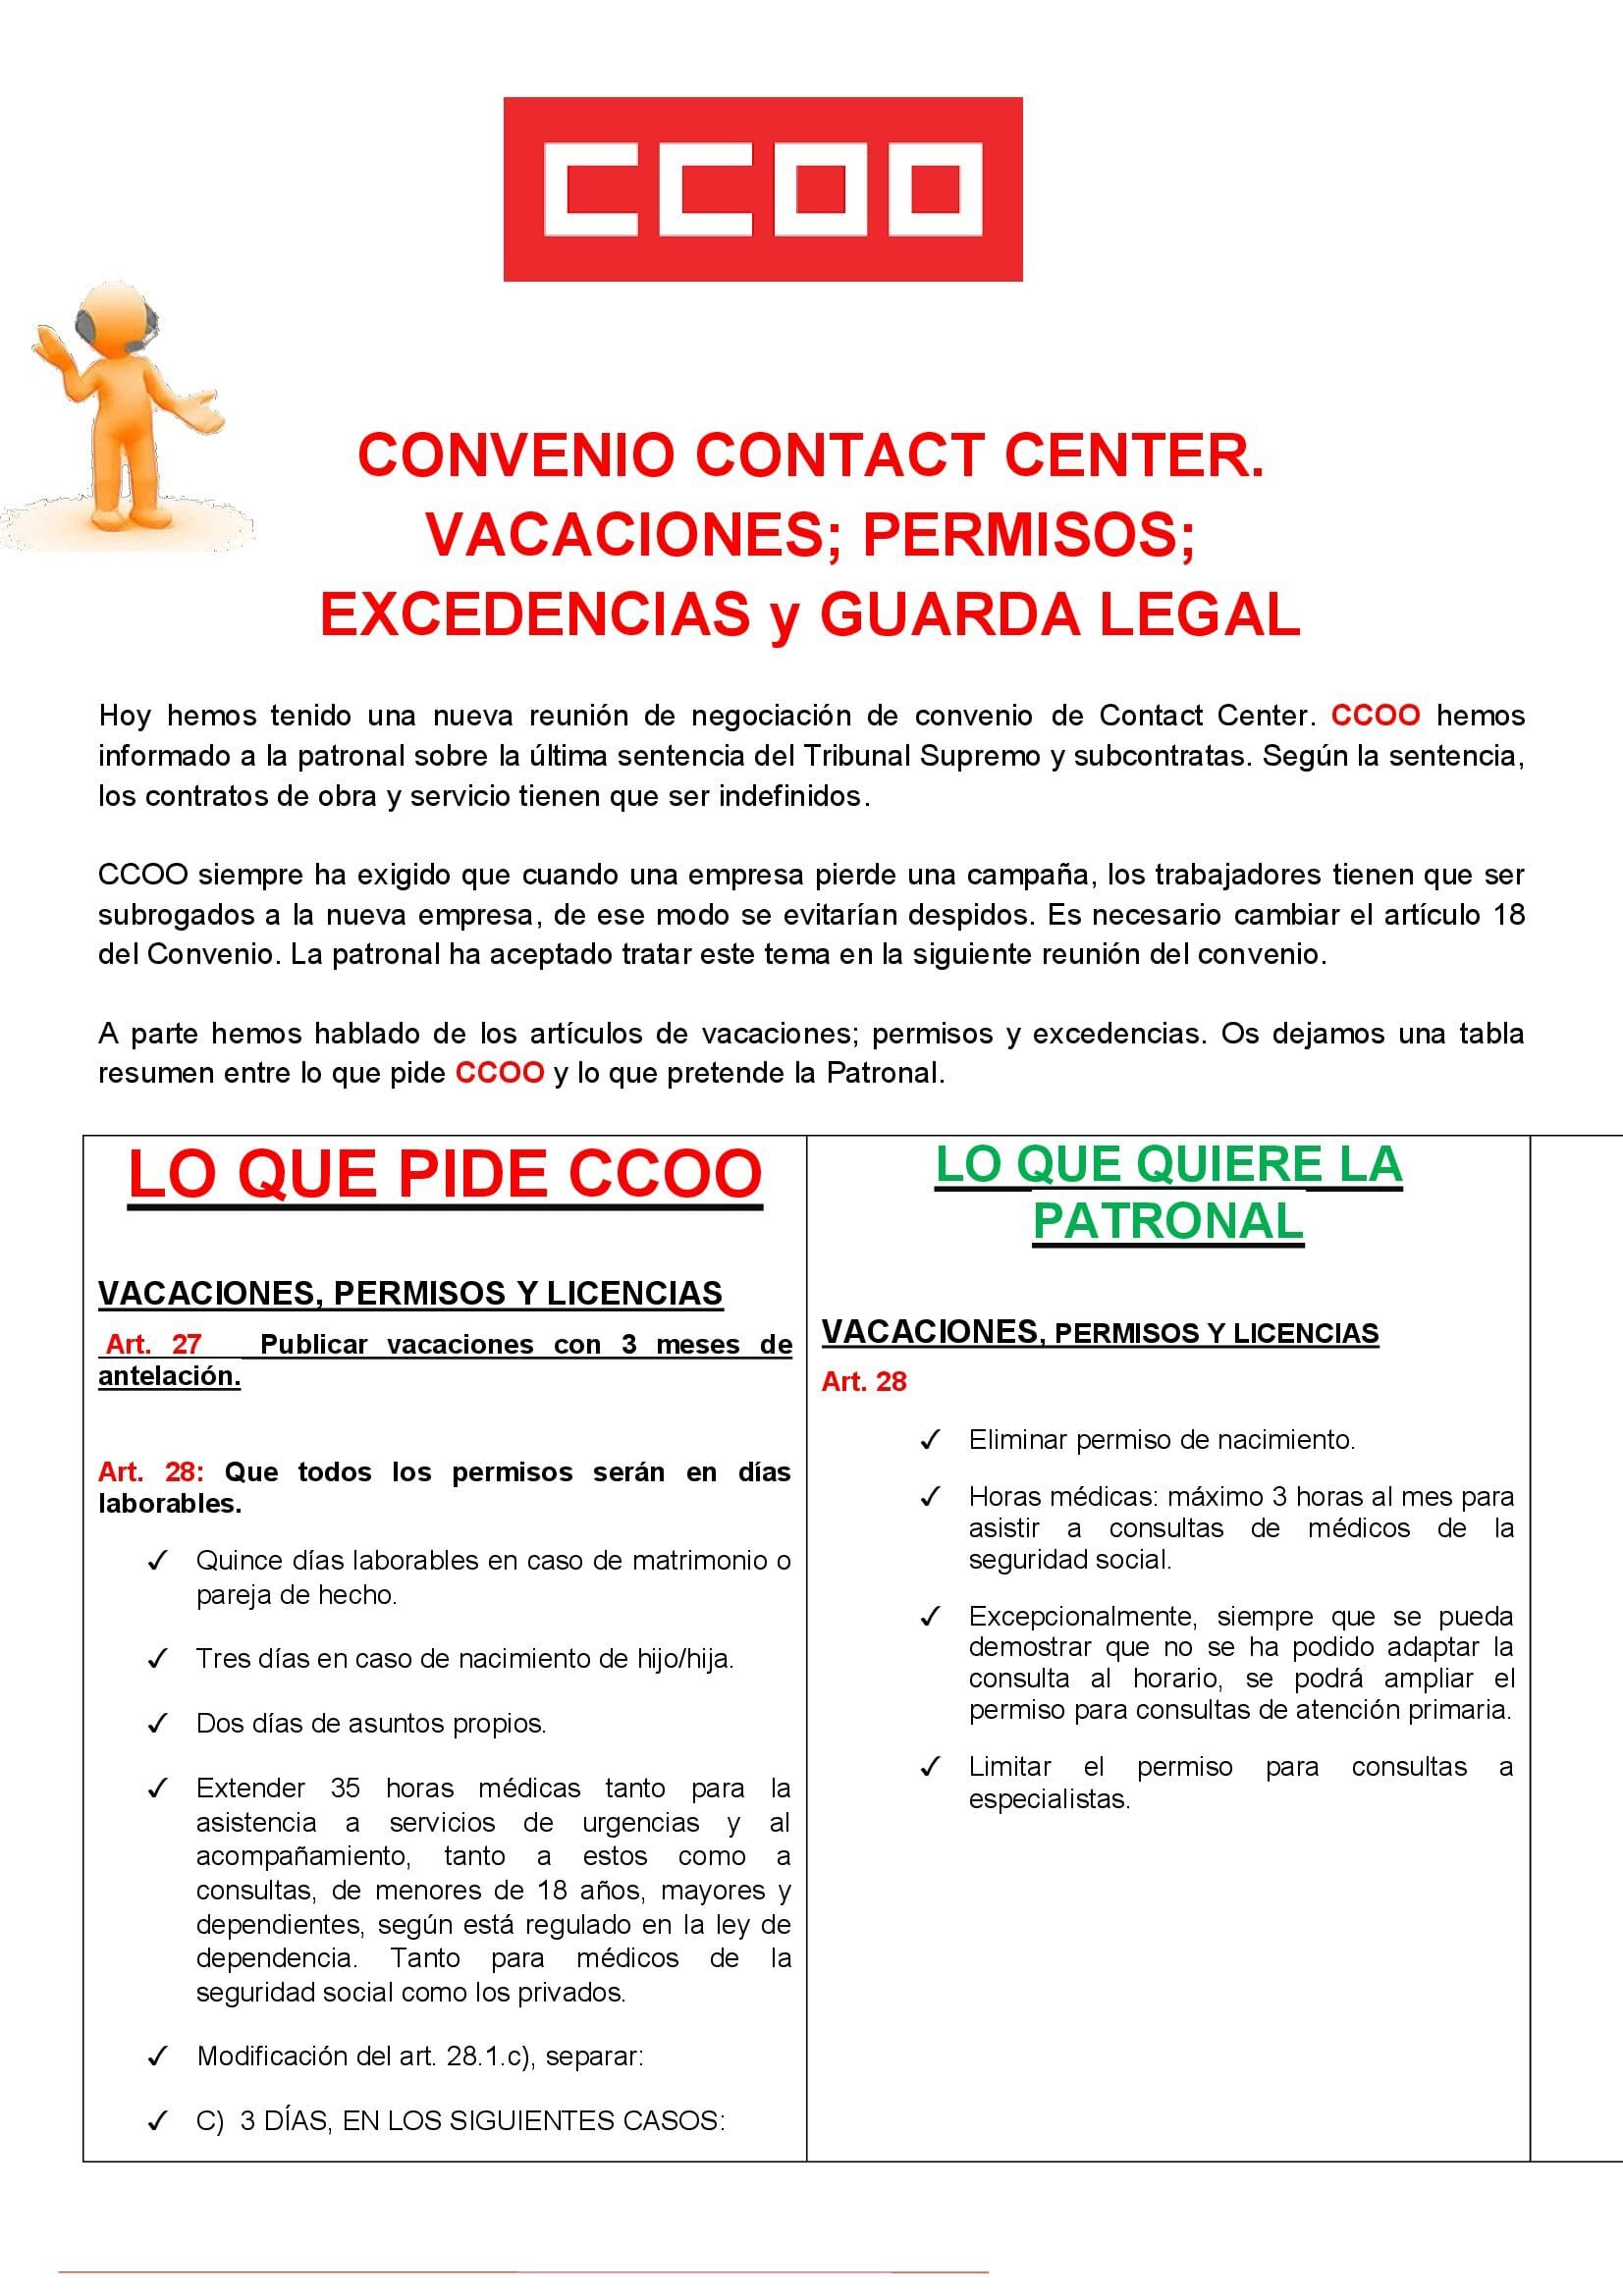 Convenio contact center 1